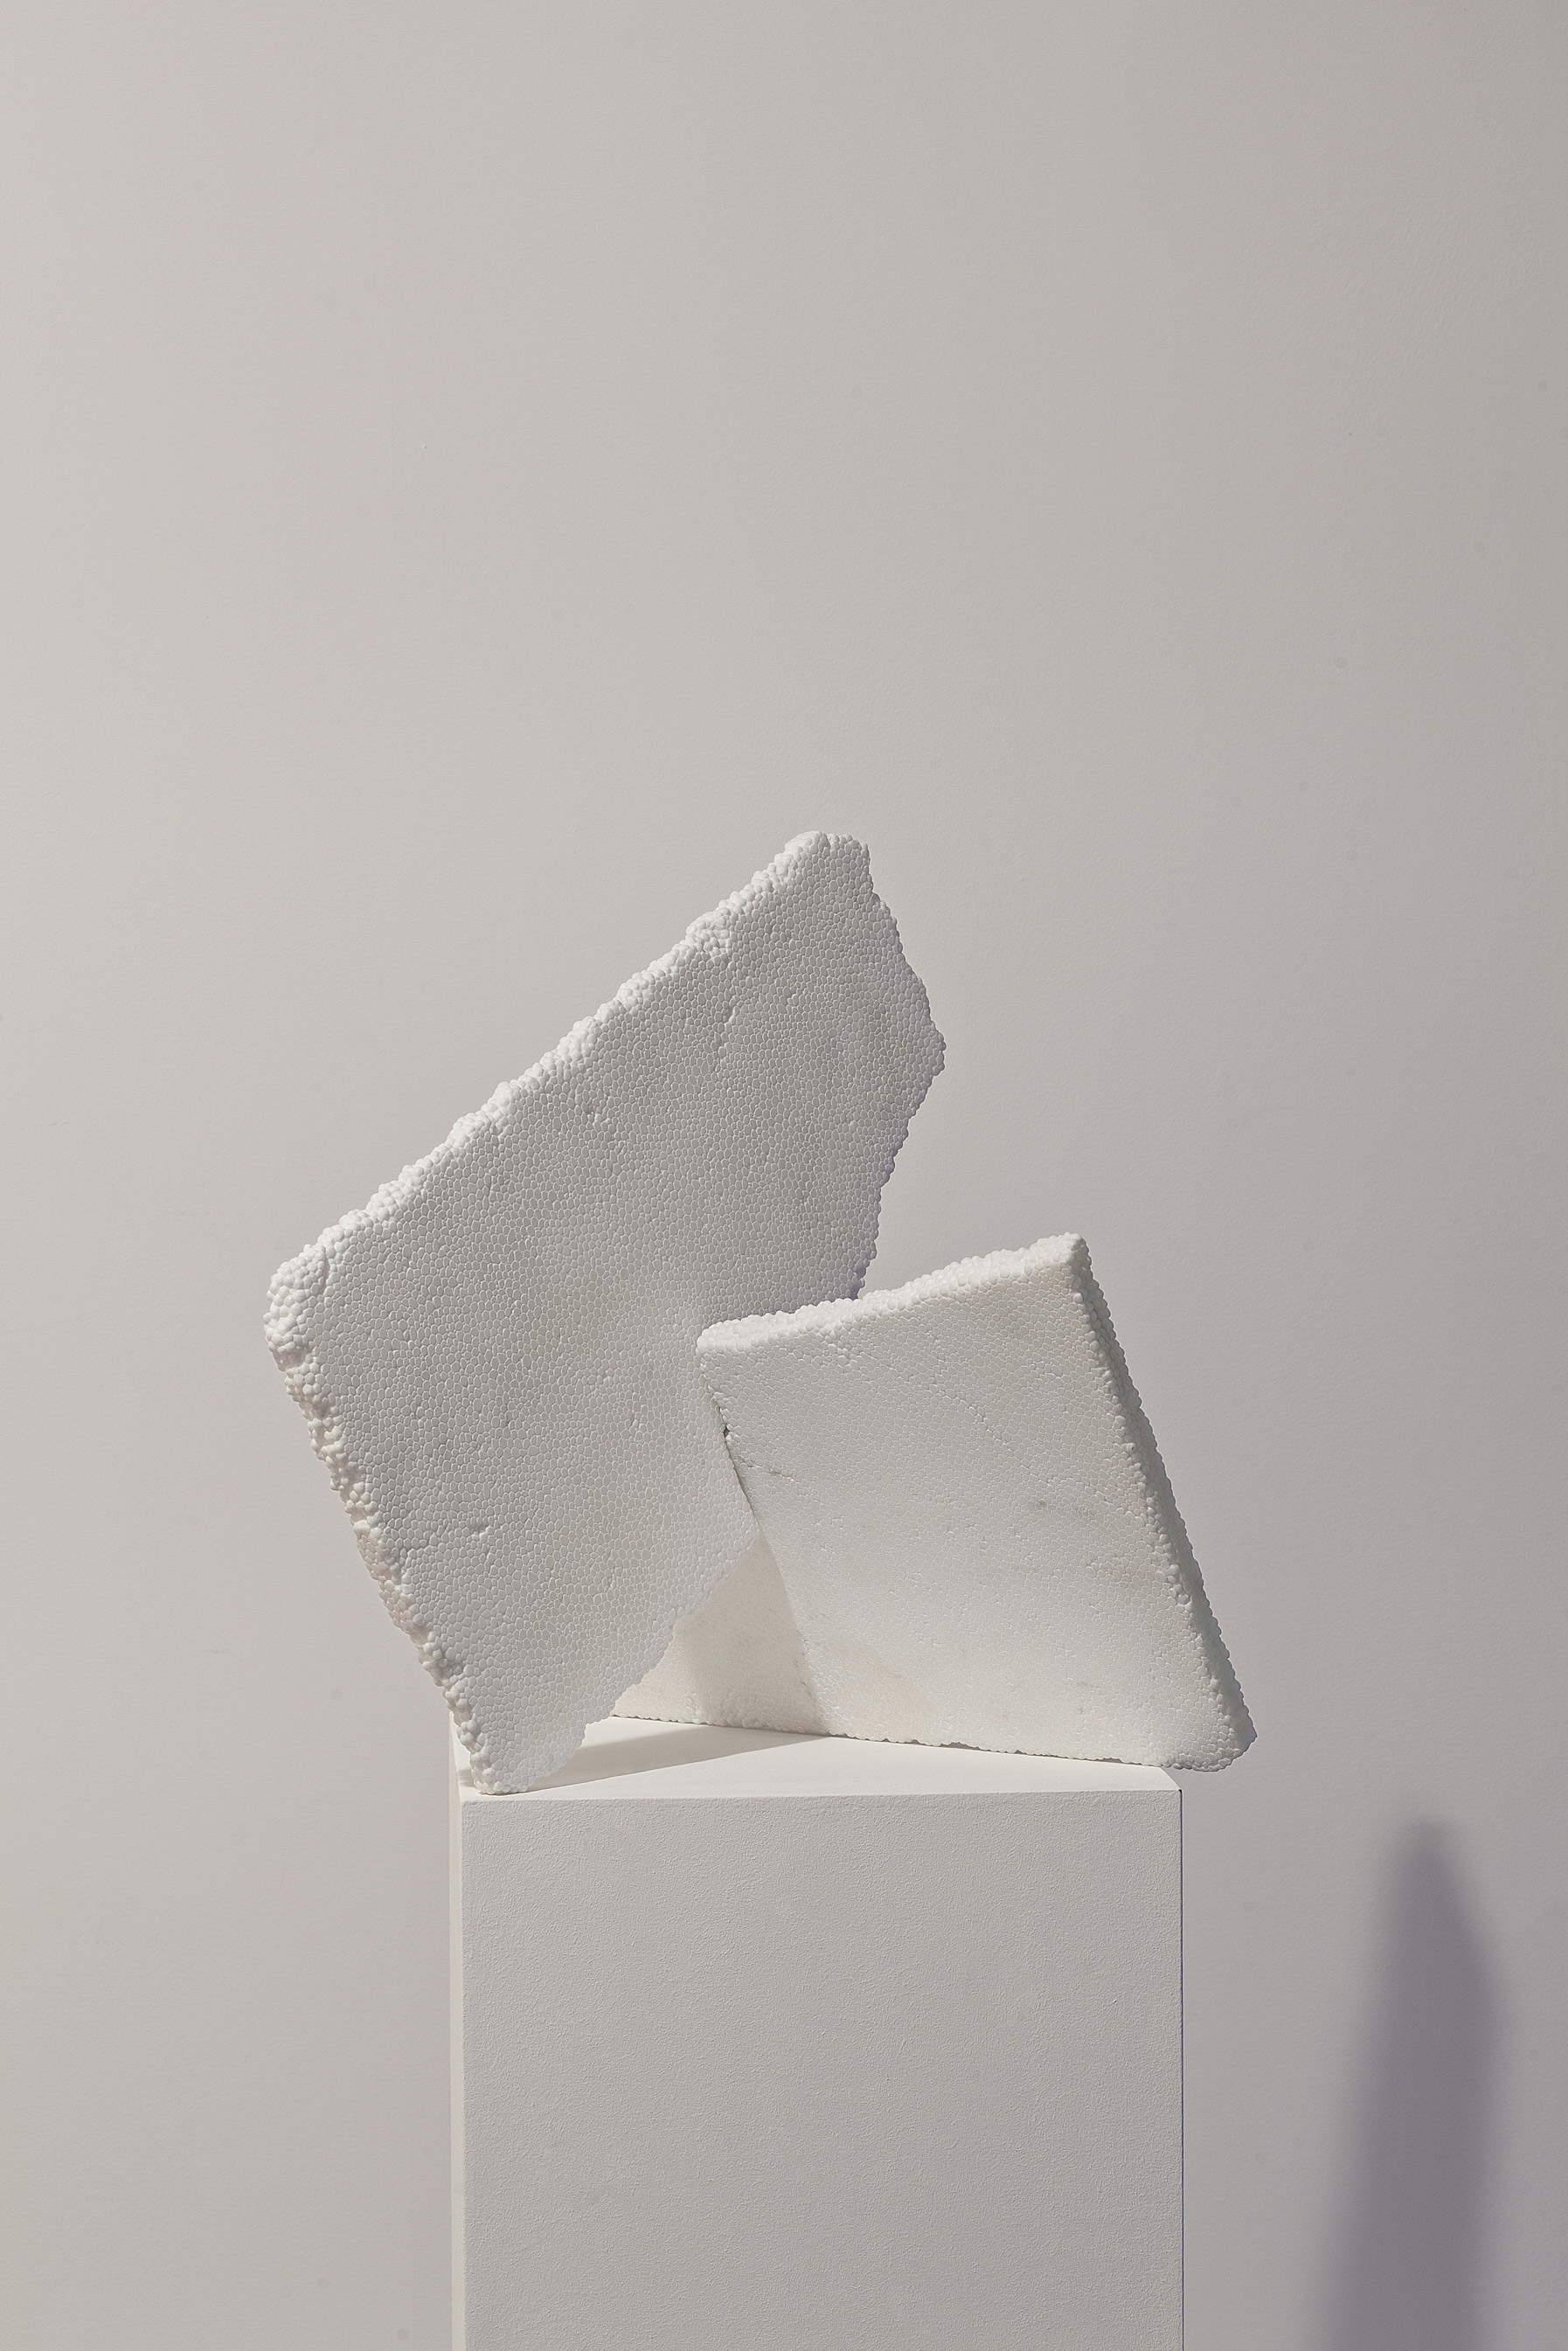 styrofoam fabio viale marmo marble sculpture scultura art poggiali forconi